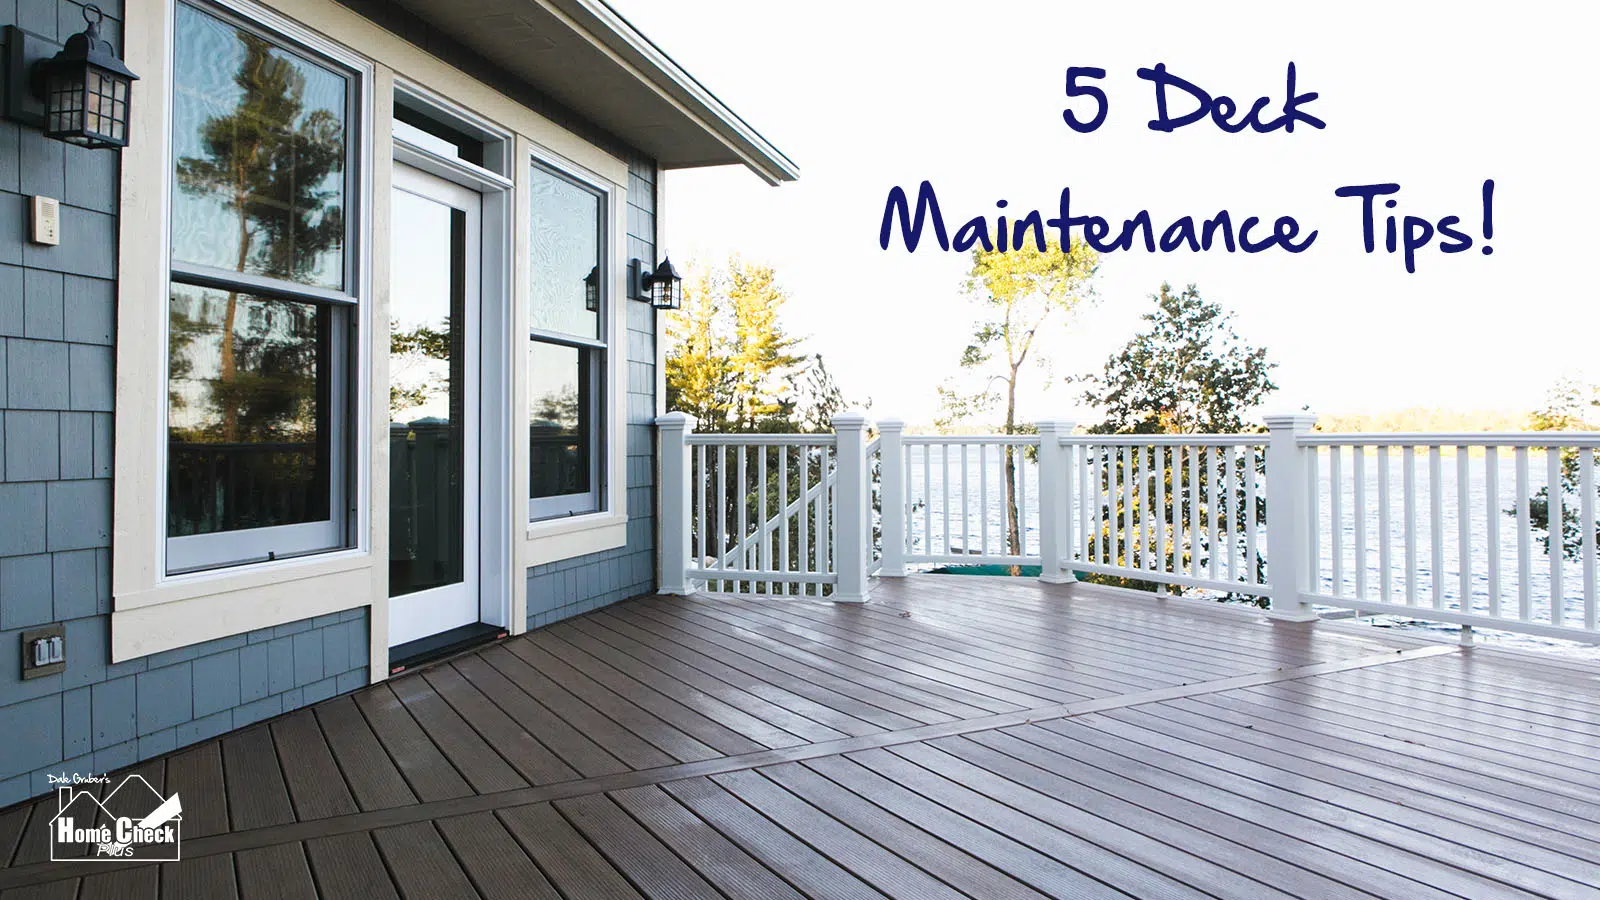 5 Deck Maintenance Tips